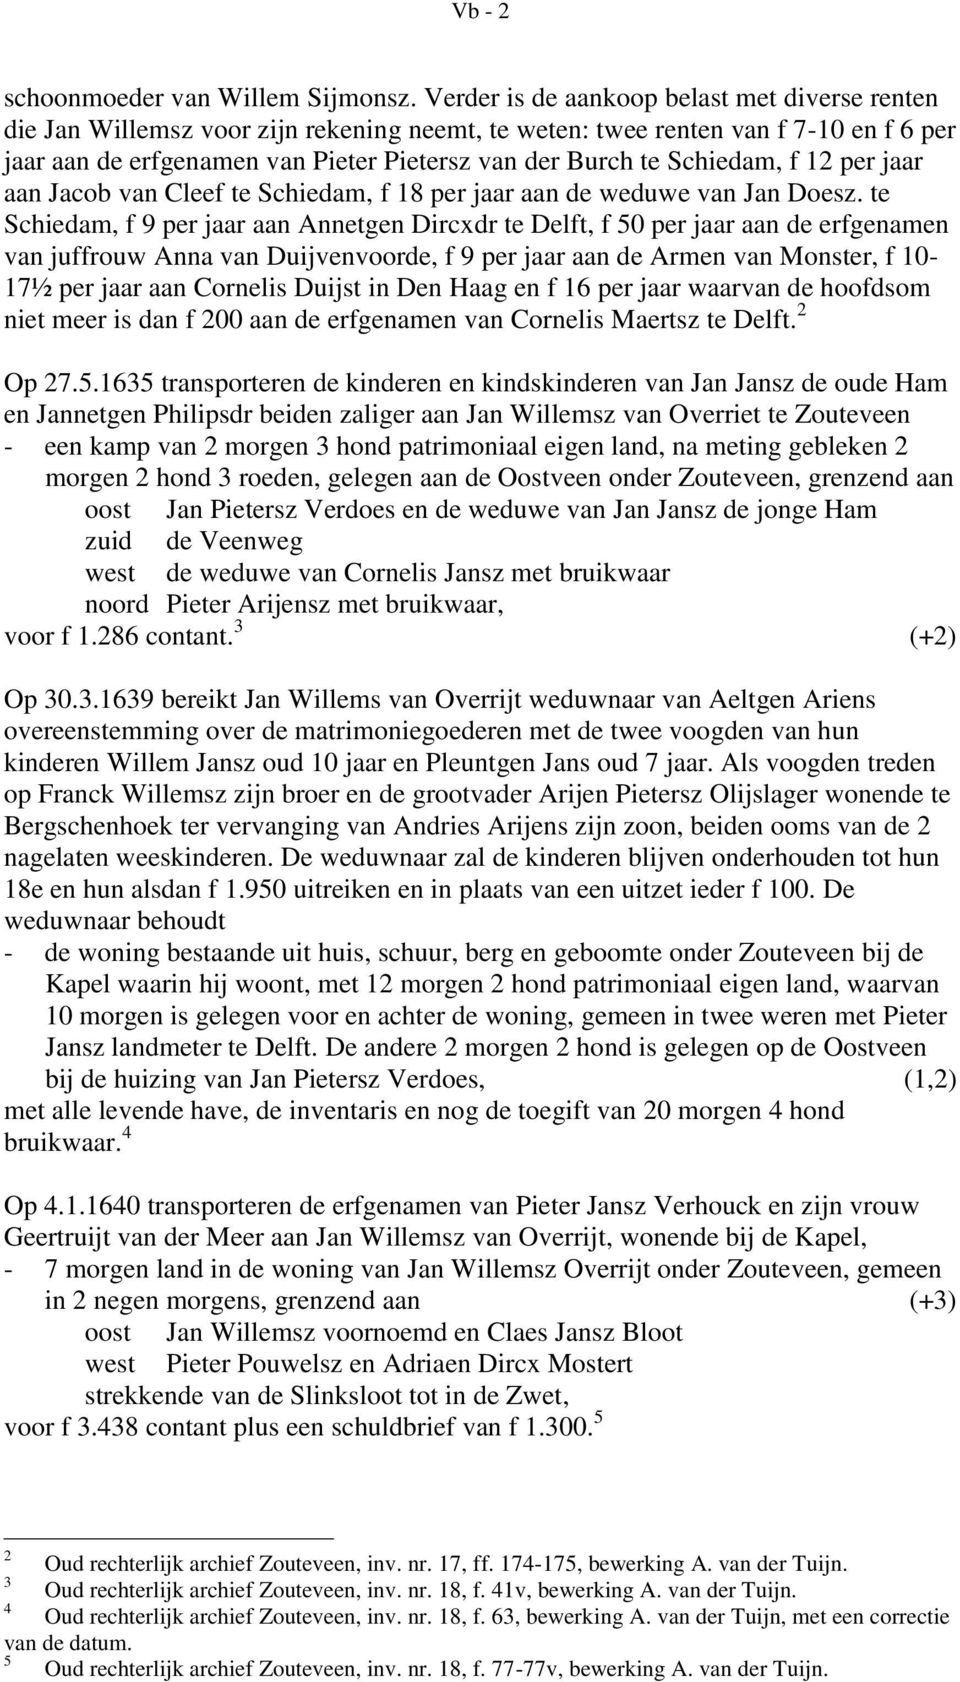 Schiedam, f 12 per jaar aan Jacob van Cleef te Schiedam, f 18 per jaar aan de weduwe van Jan Doesz.